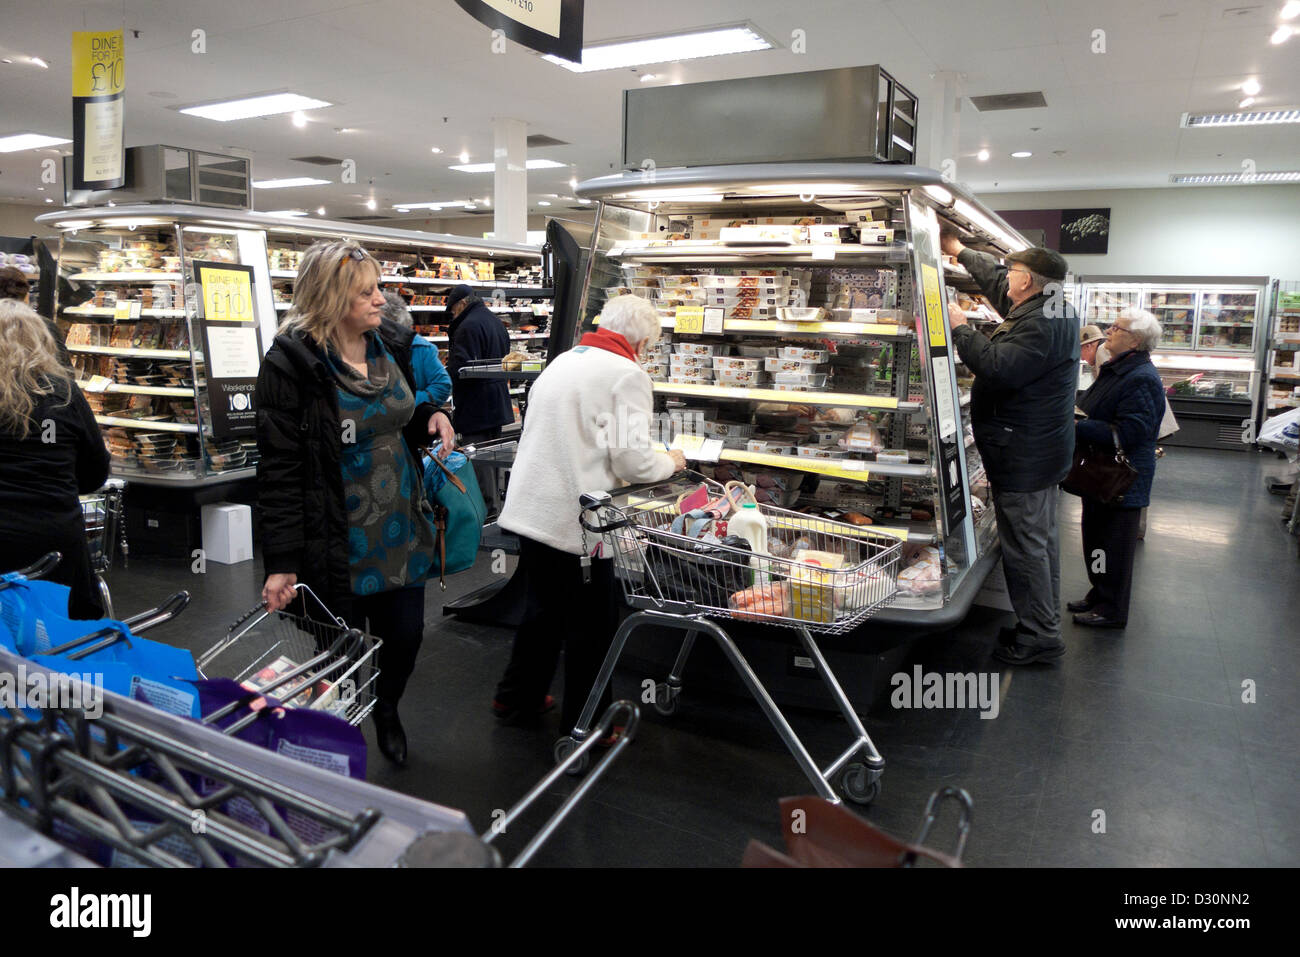 Les clients avec panier et chariot à la recherche sur les produits refroidis à l'allée de réfrigération à l'intérieur magasin Marks and Spencer UK KATHY DEWITT Banque D'Images